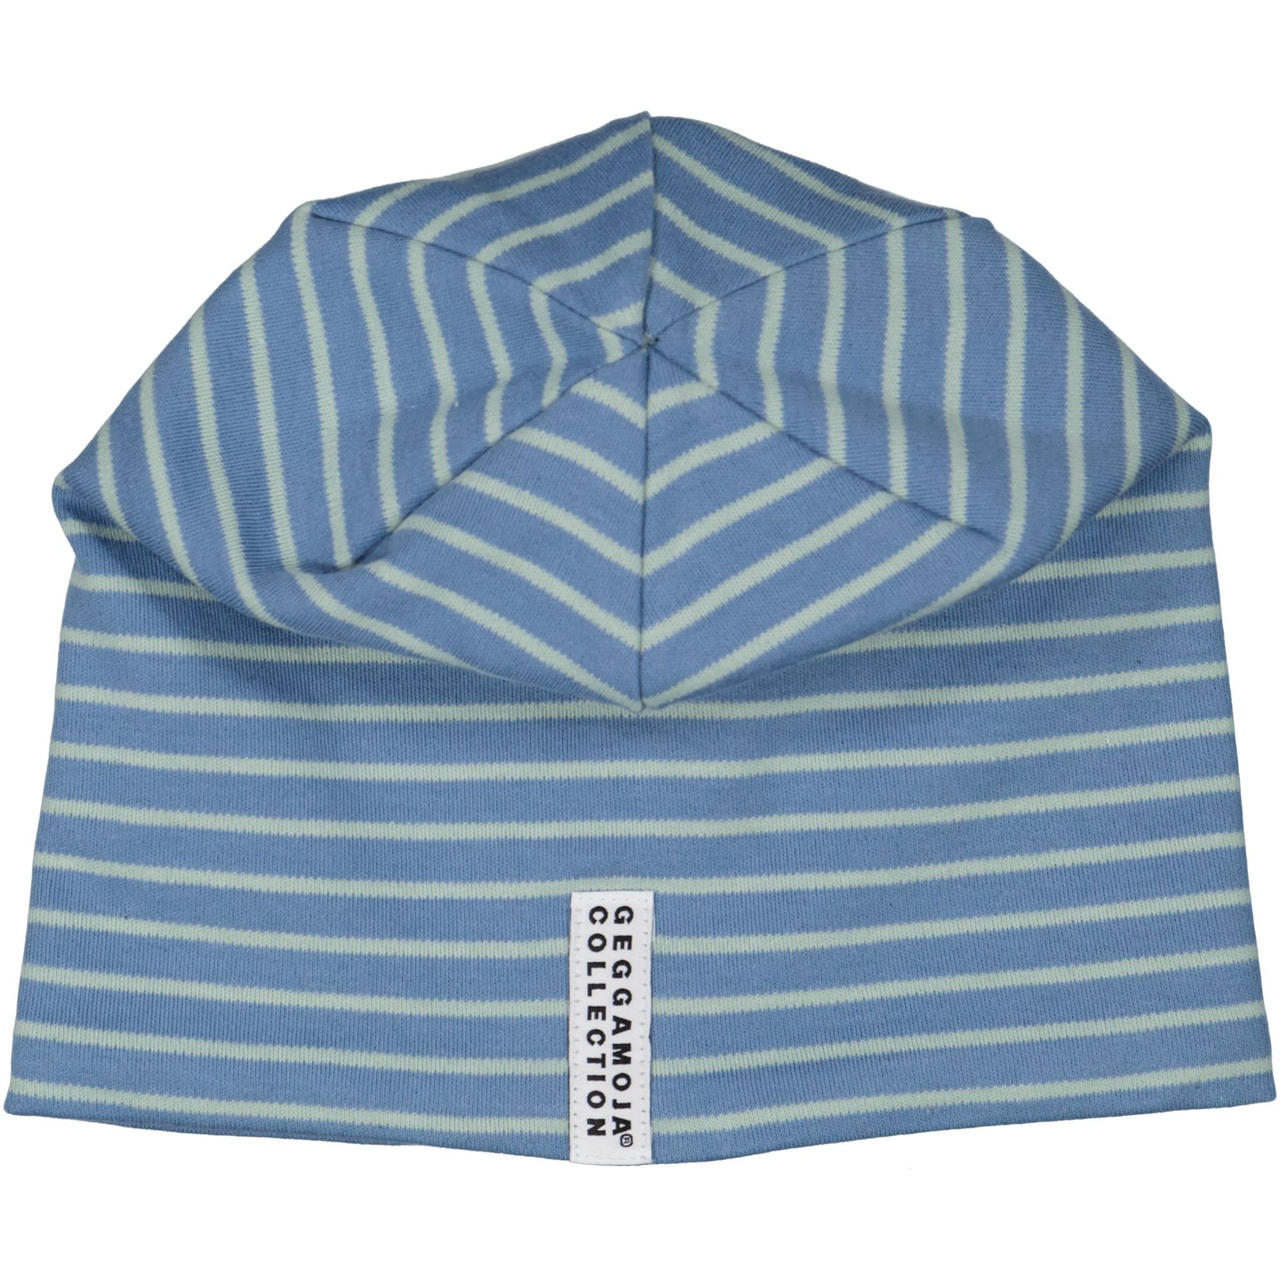 Topline fleece cap Blue/greenL 6 - Adult